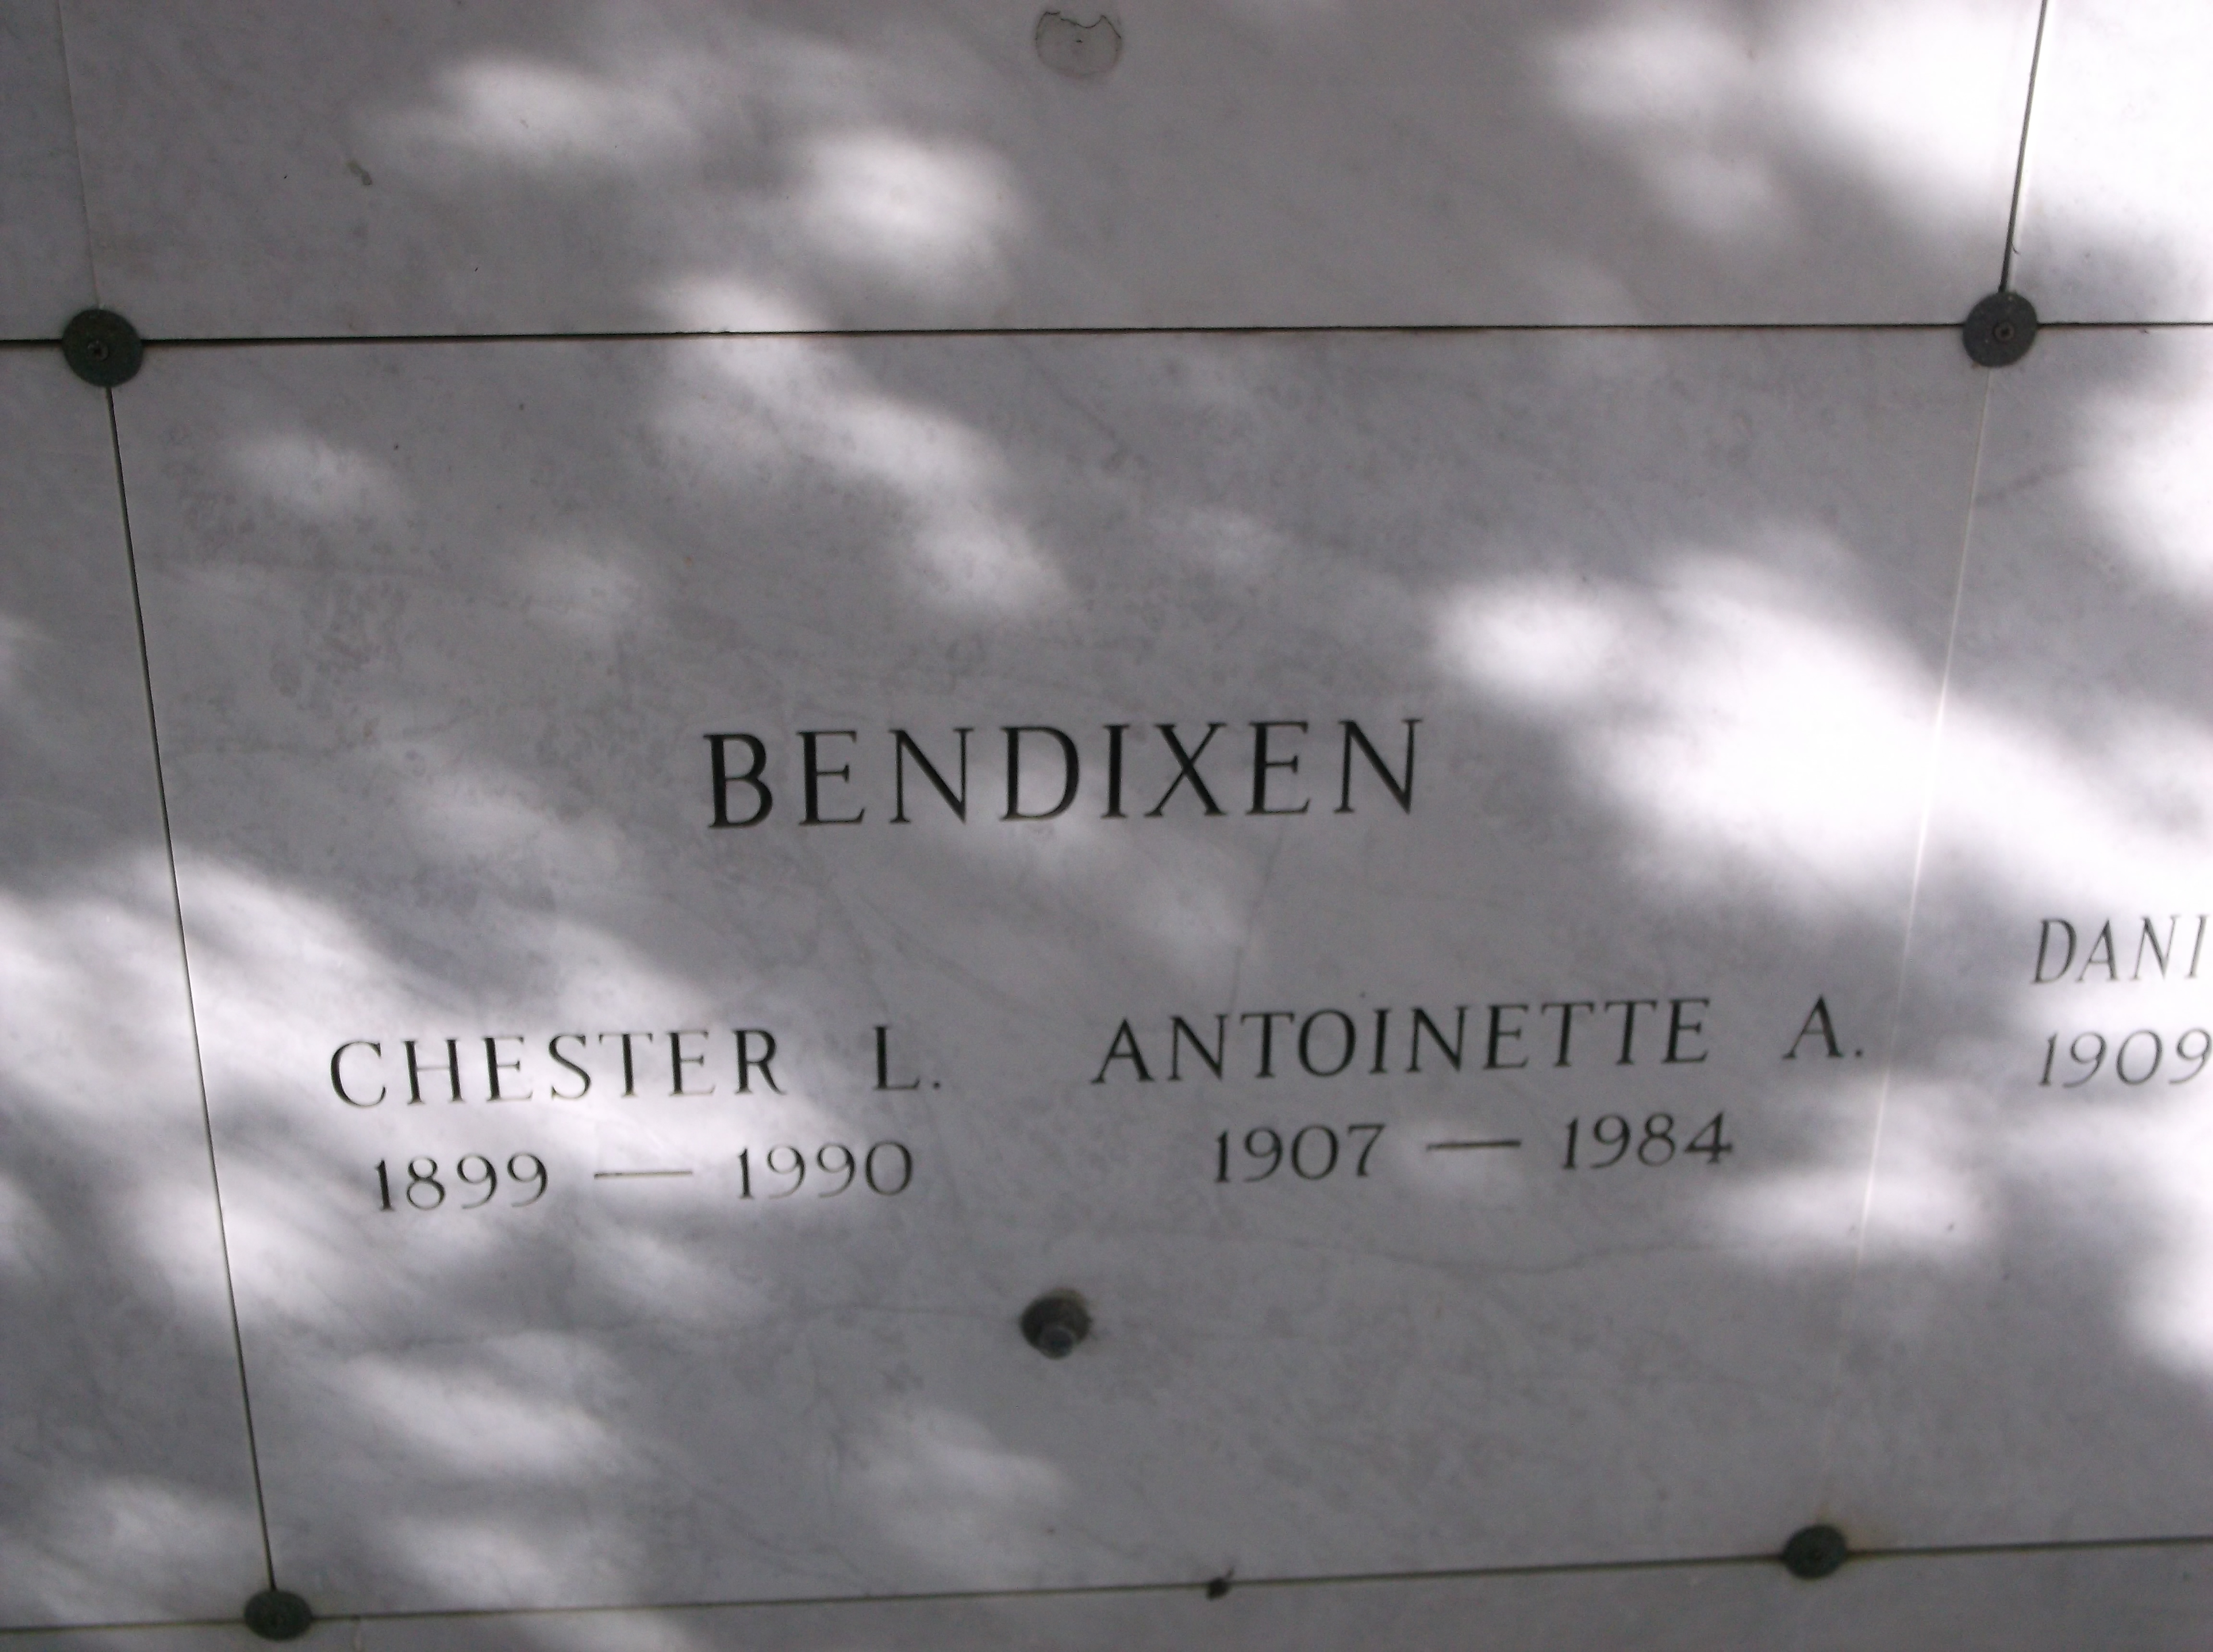 Chester L Bendixen